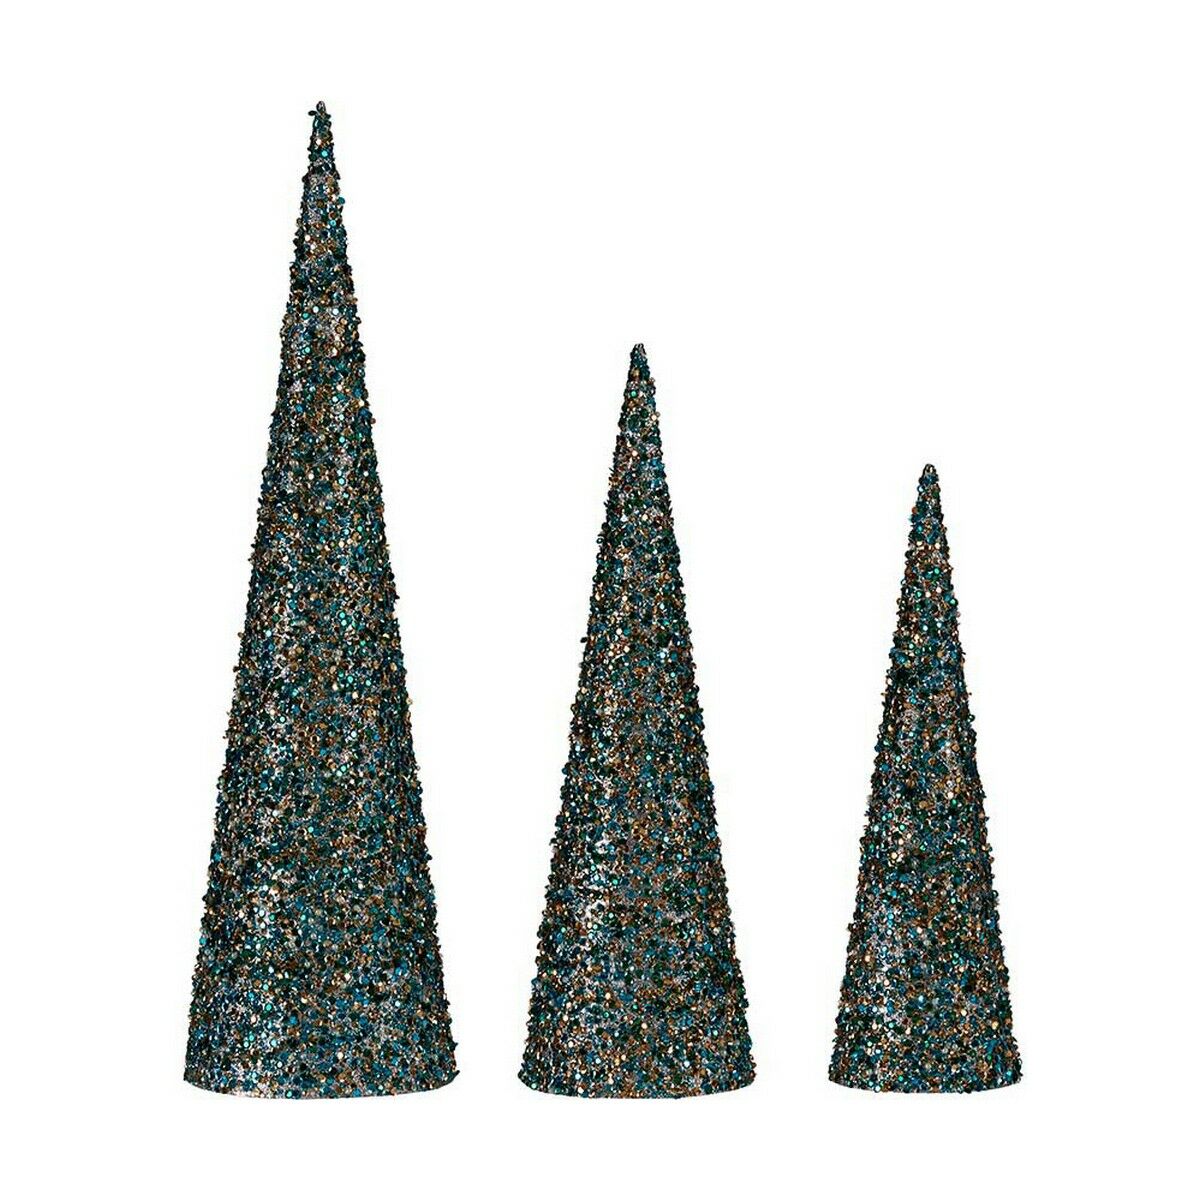 Decoration Christmas Cones Sequins Blue Golden Plastic